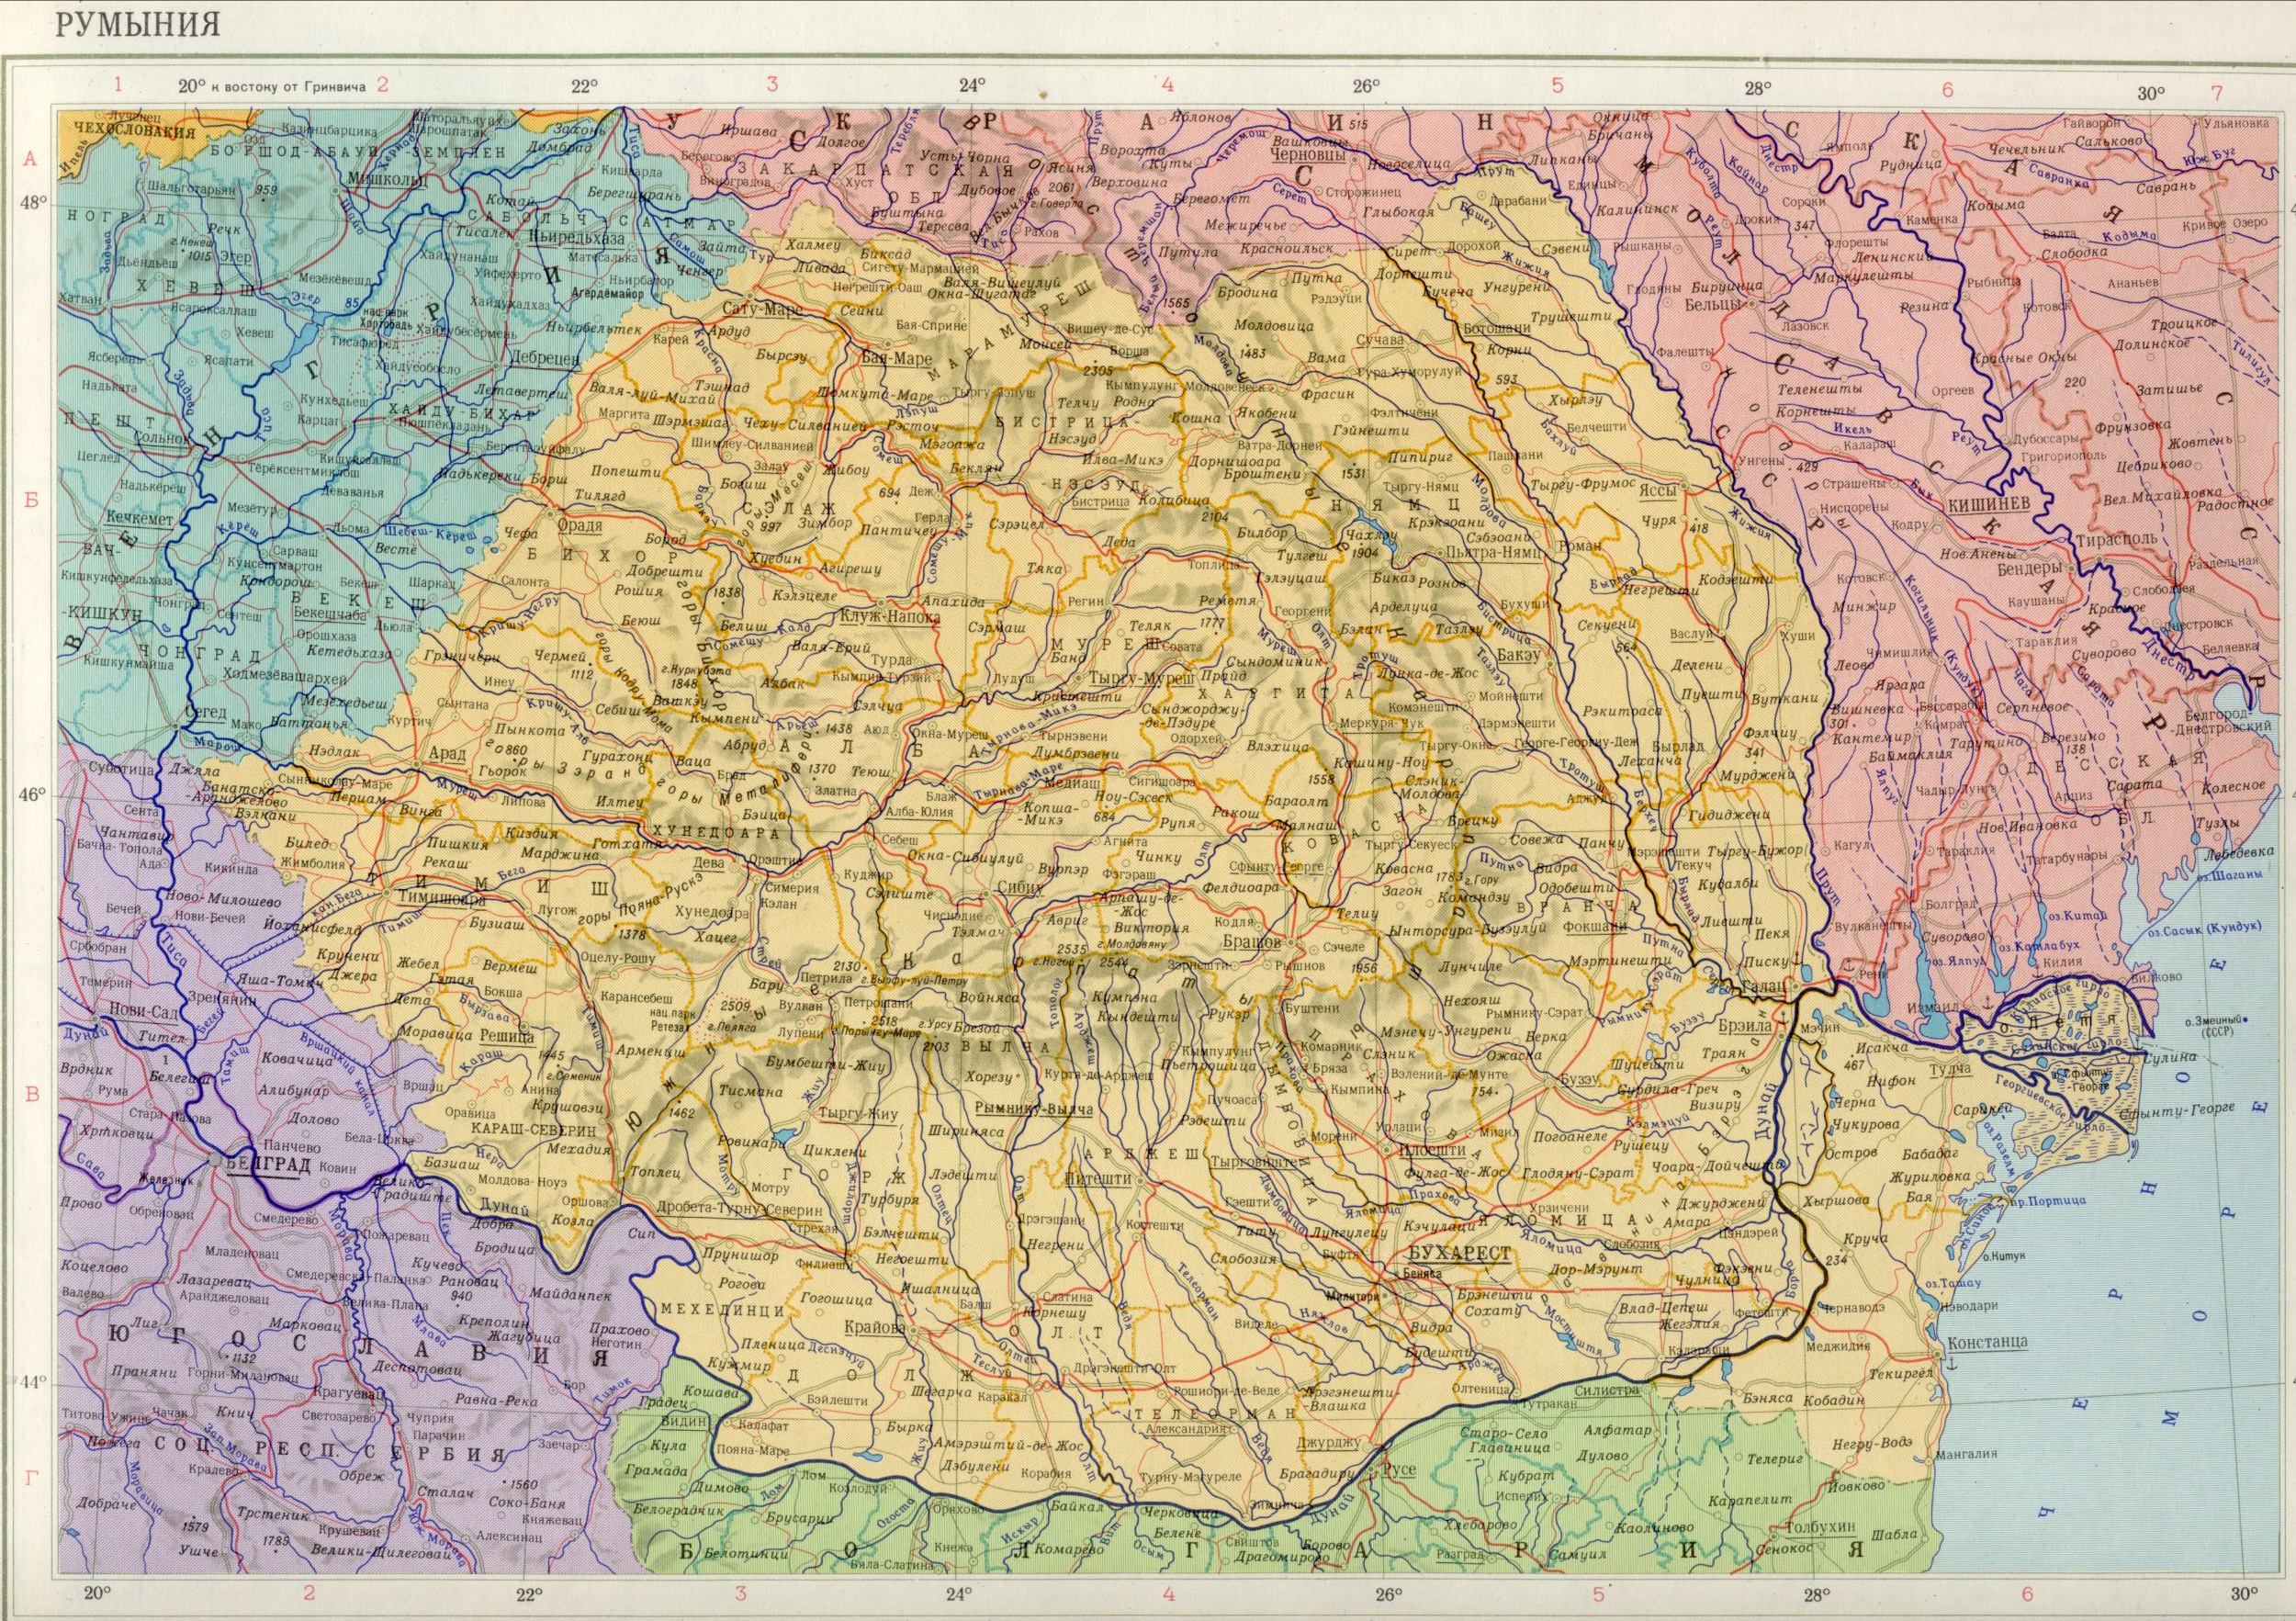 Карта Румынии 1см=30км. Скачать бесплатно политические карты Европы